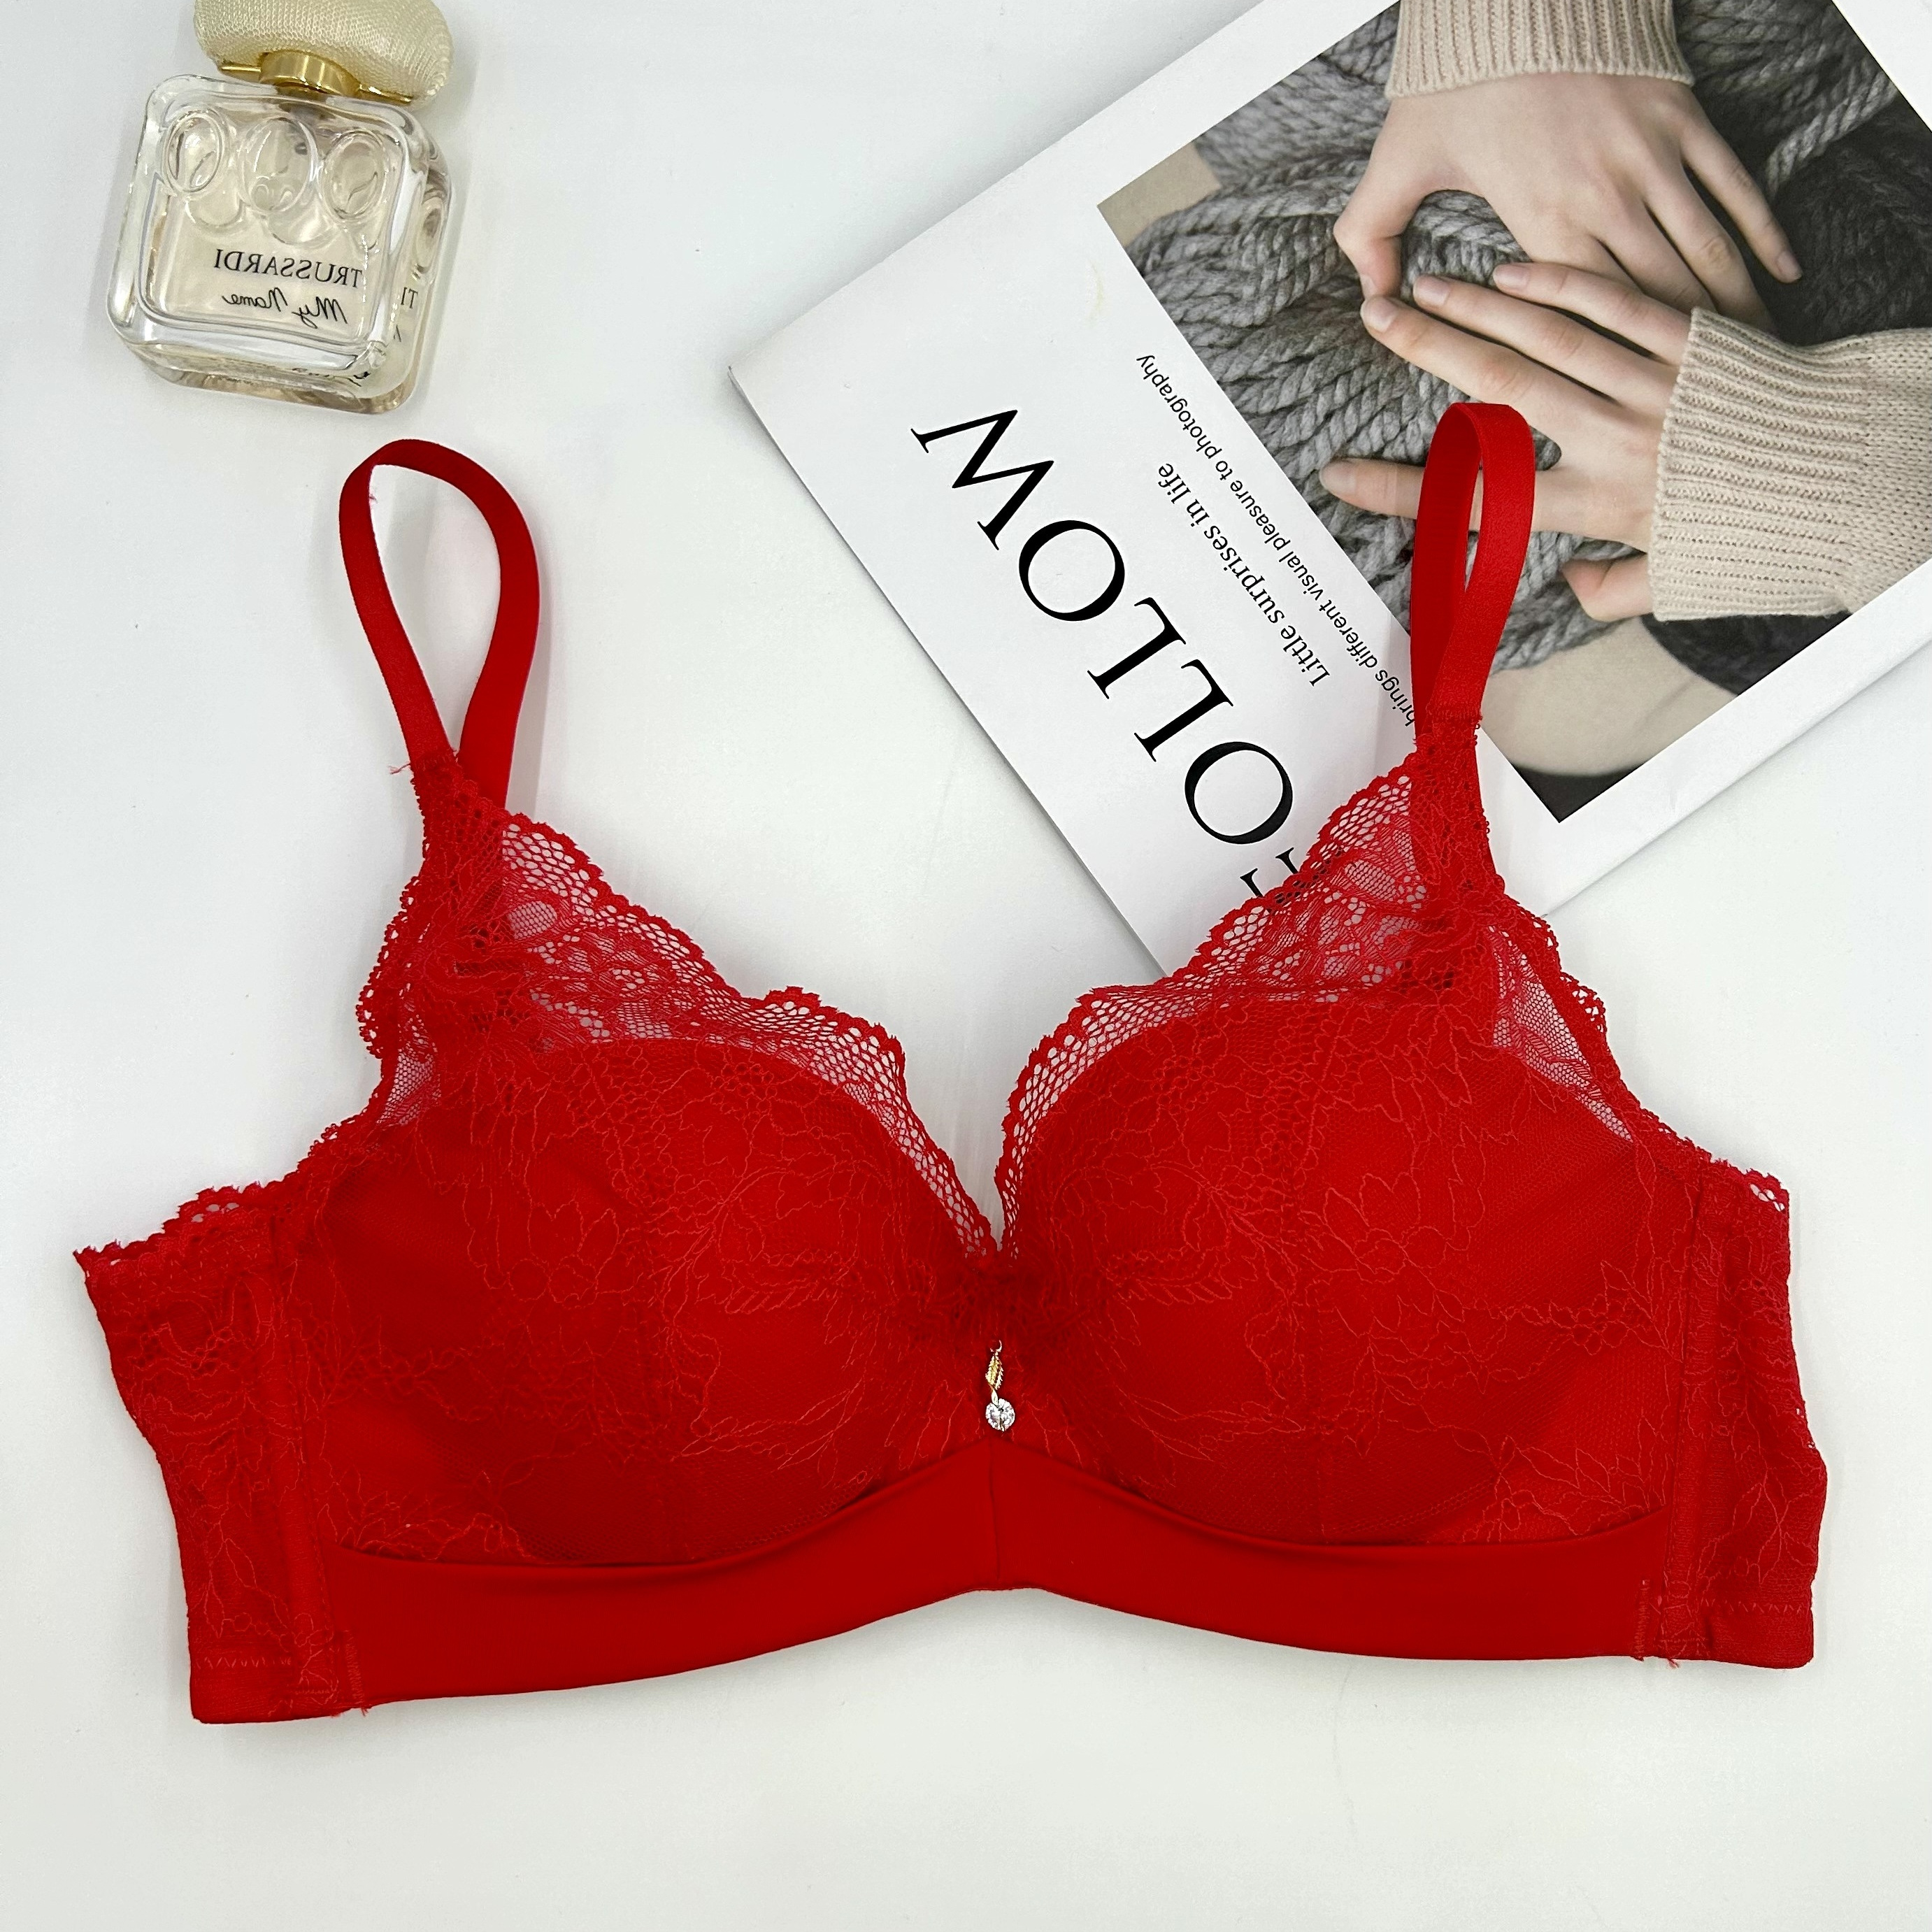 Wozhidaoke Bras for Women Women Lace Bra Set Underwear Panties Set Push Up  Bra Lingerie Set (Red,40) 